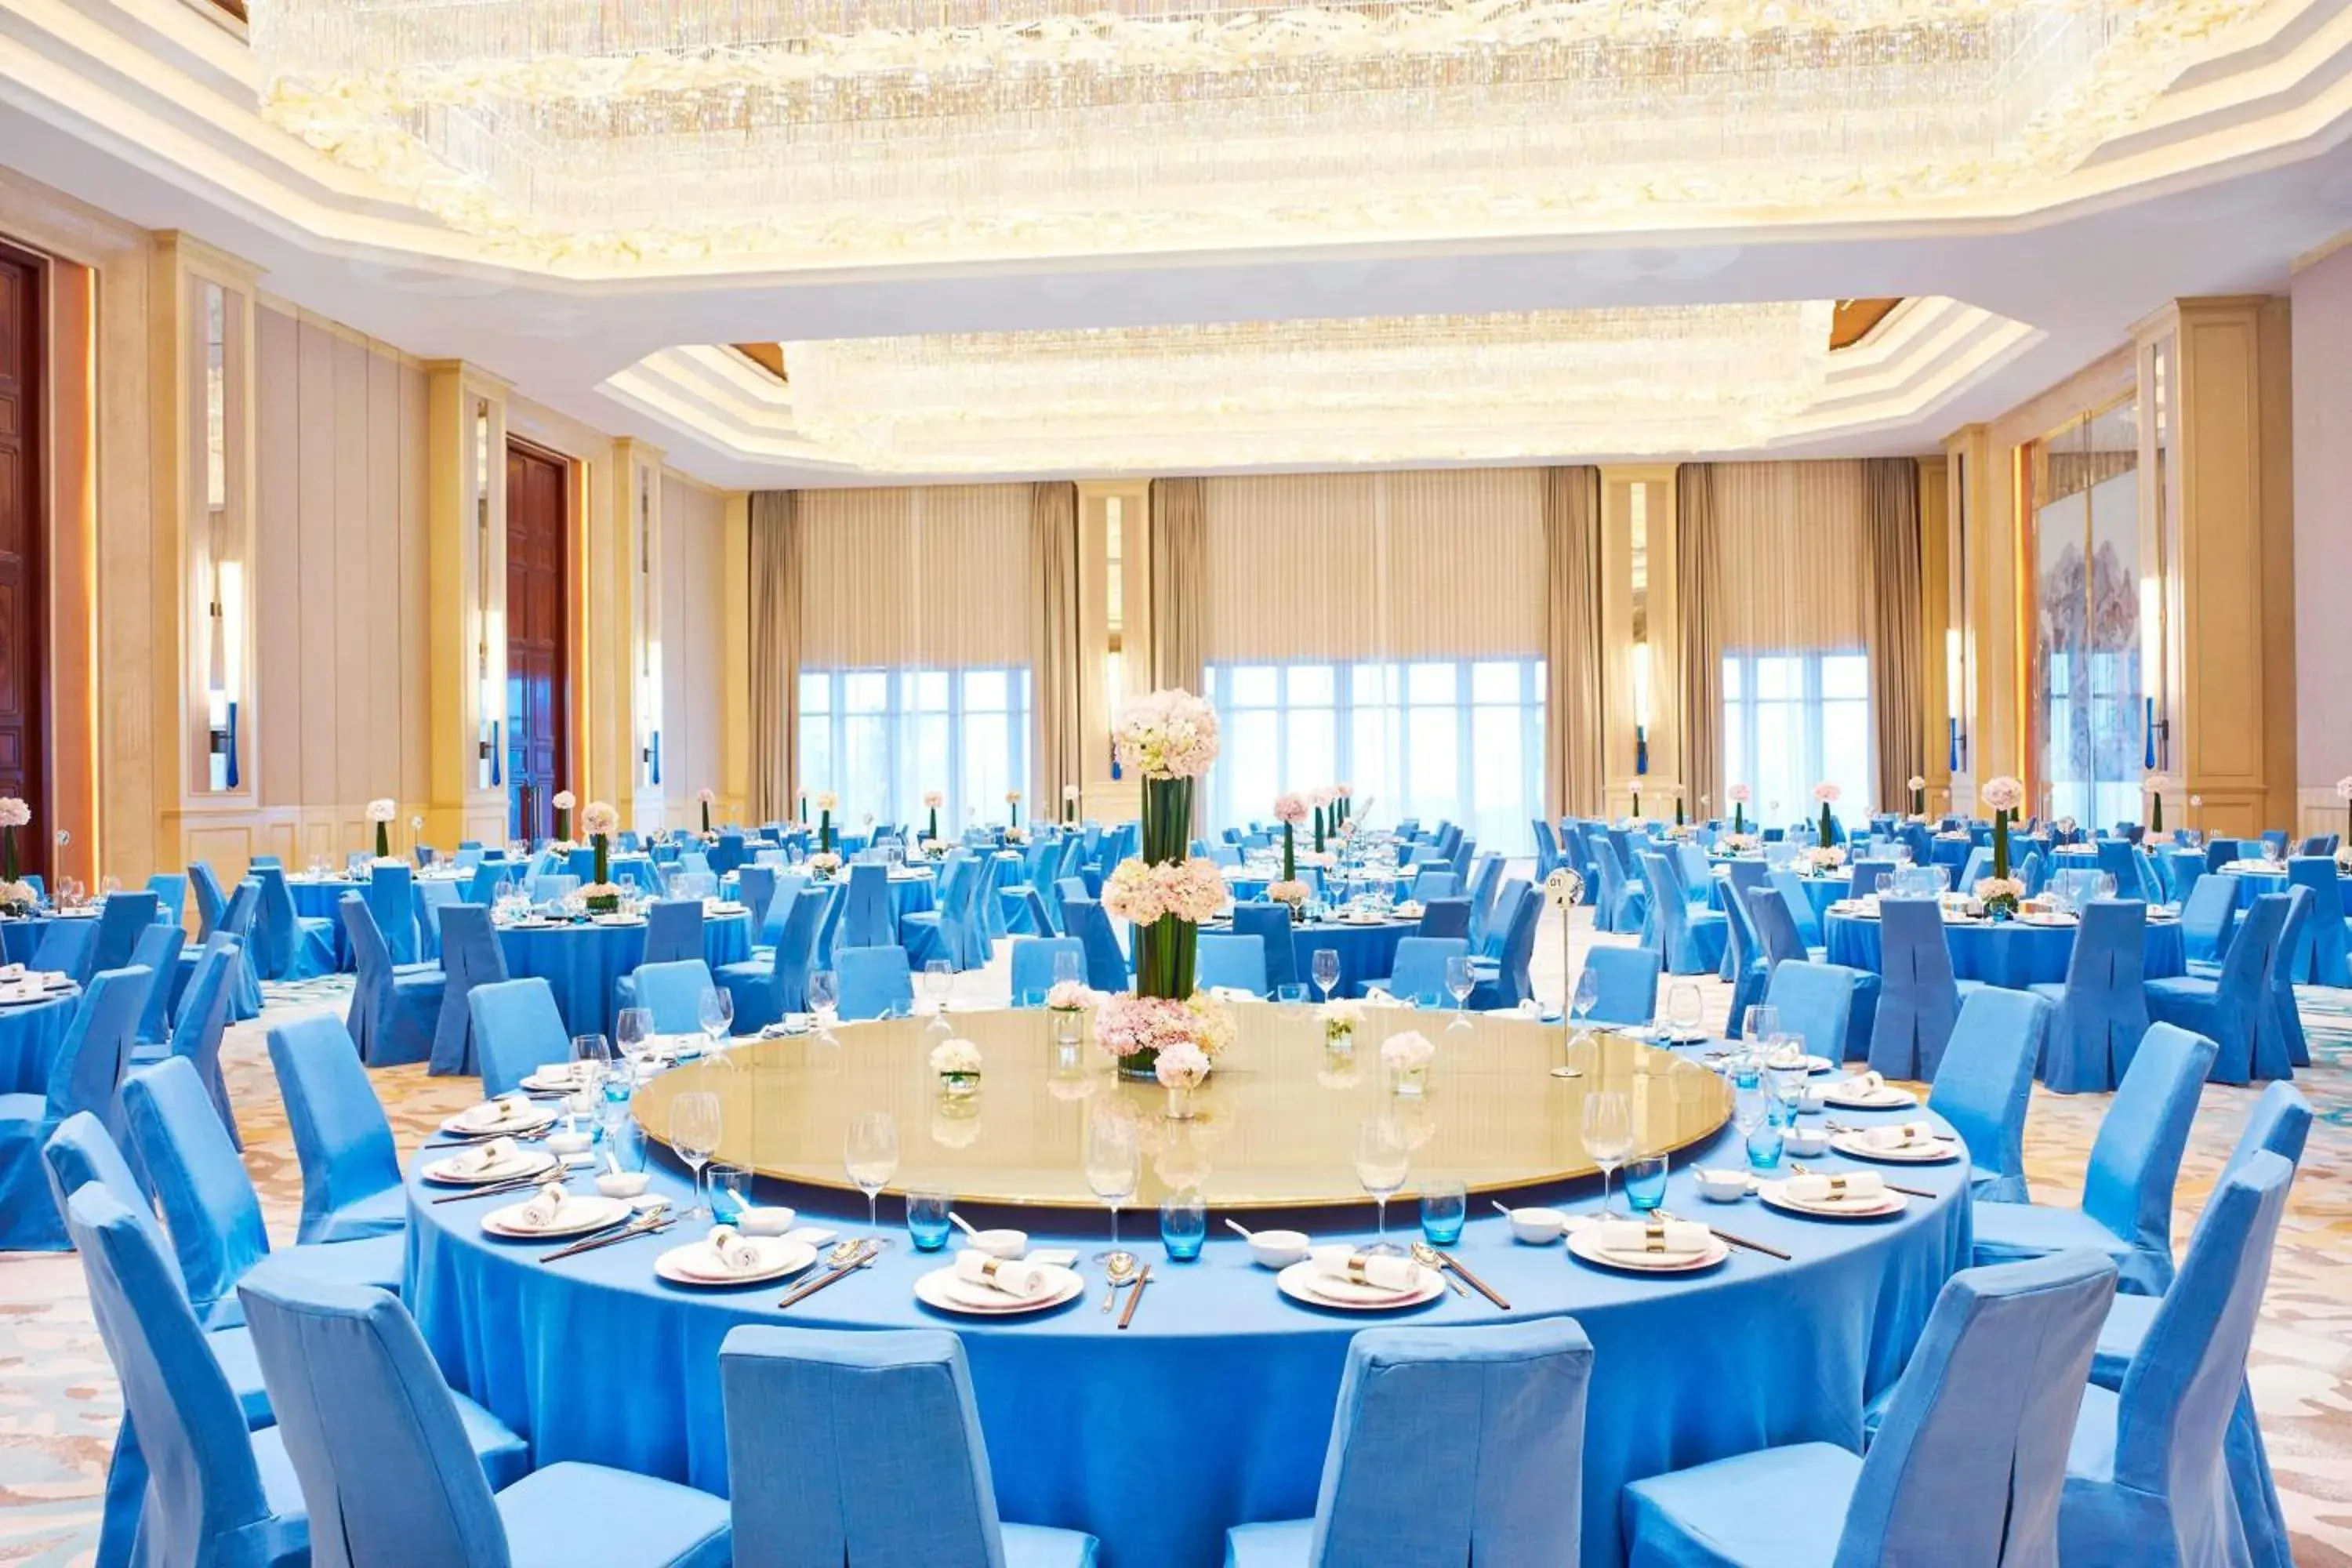 Meeting/conference room, Banquet Facilities in The Westin Zhujiajian Resort, Zhoushan